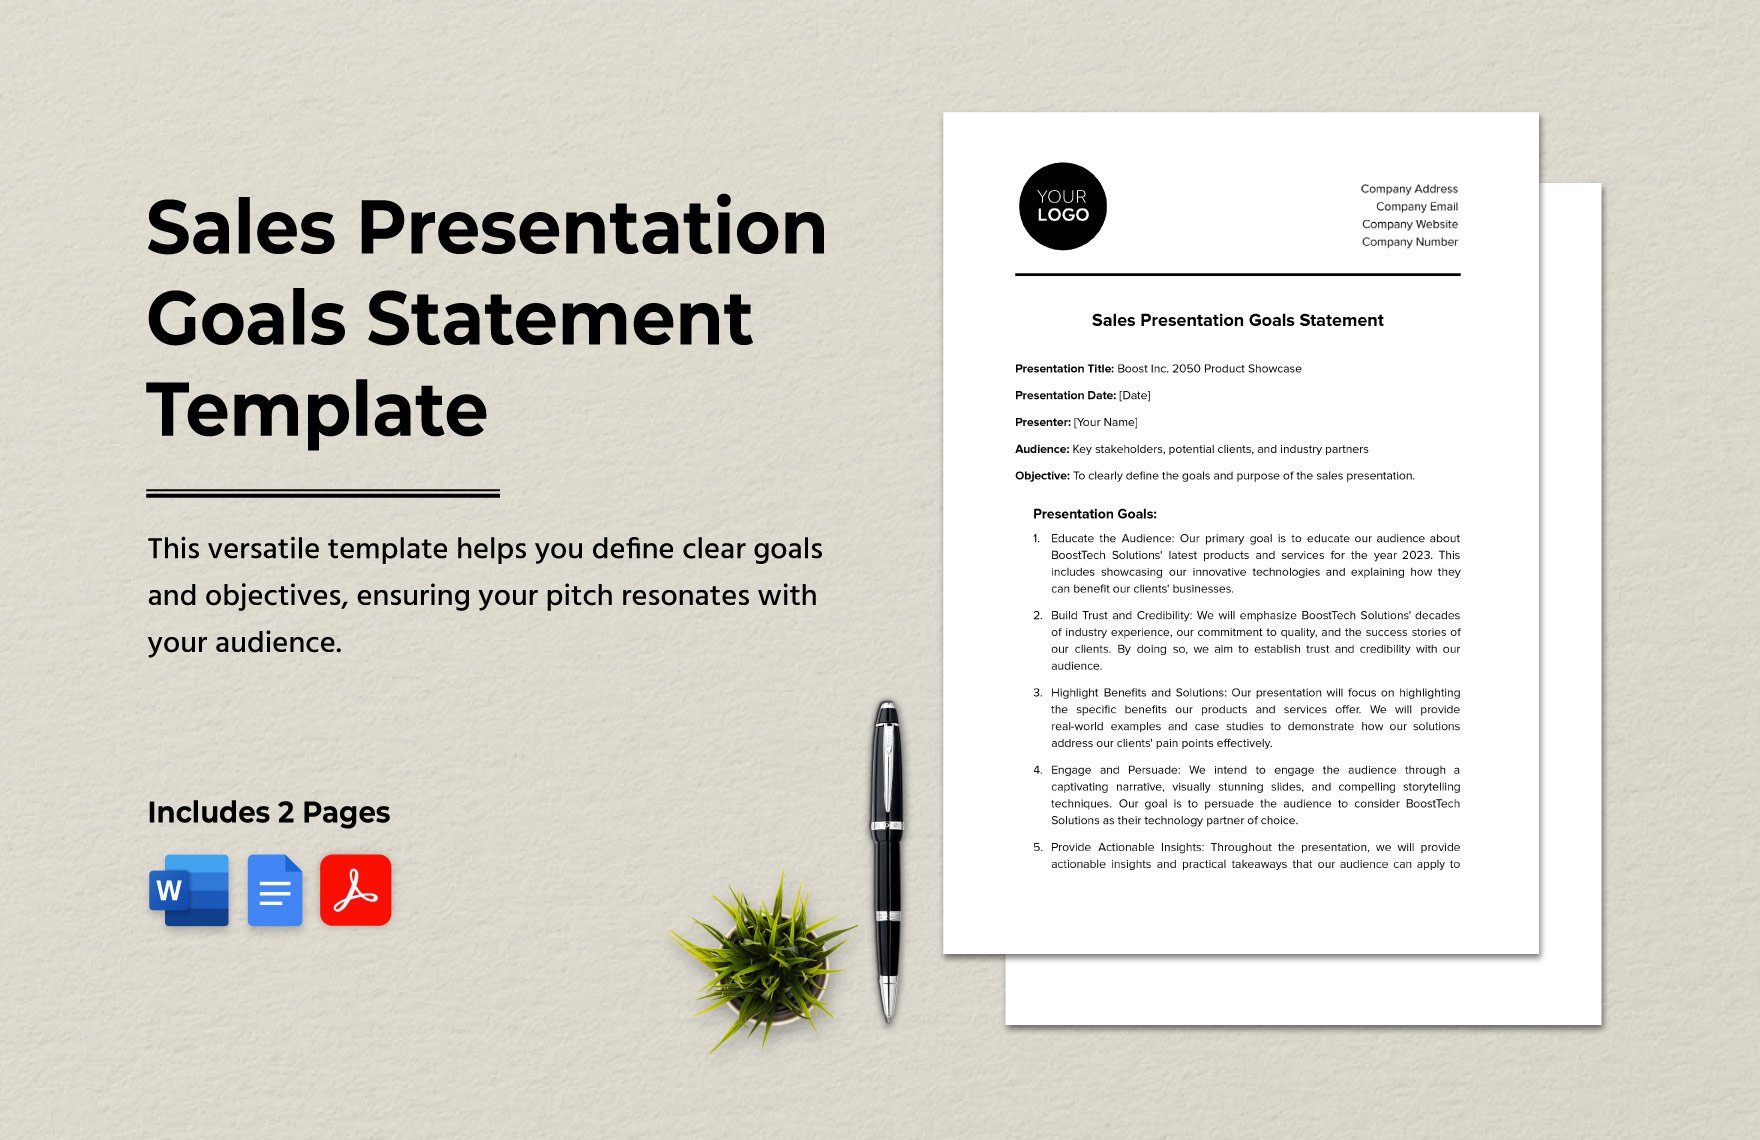 Sales Presentation Goals Statement Template